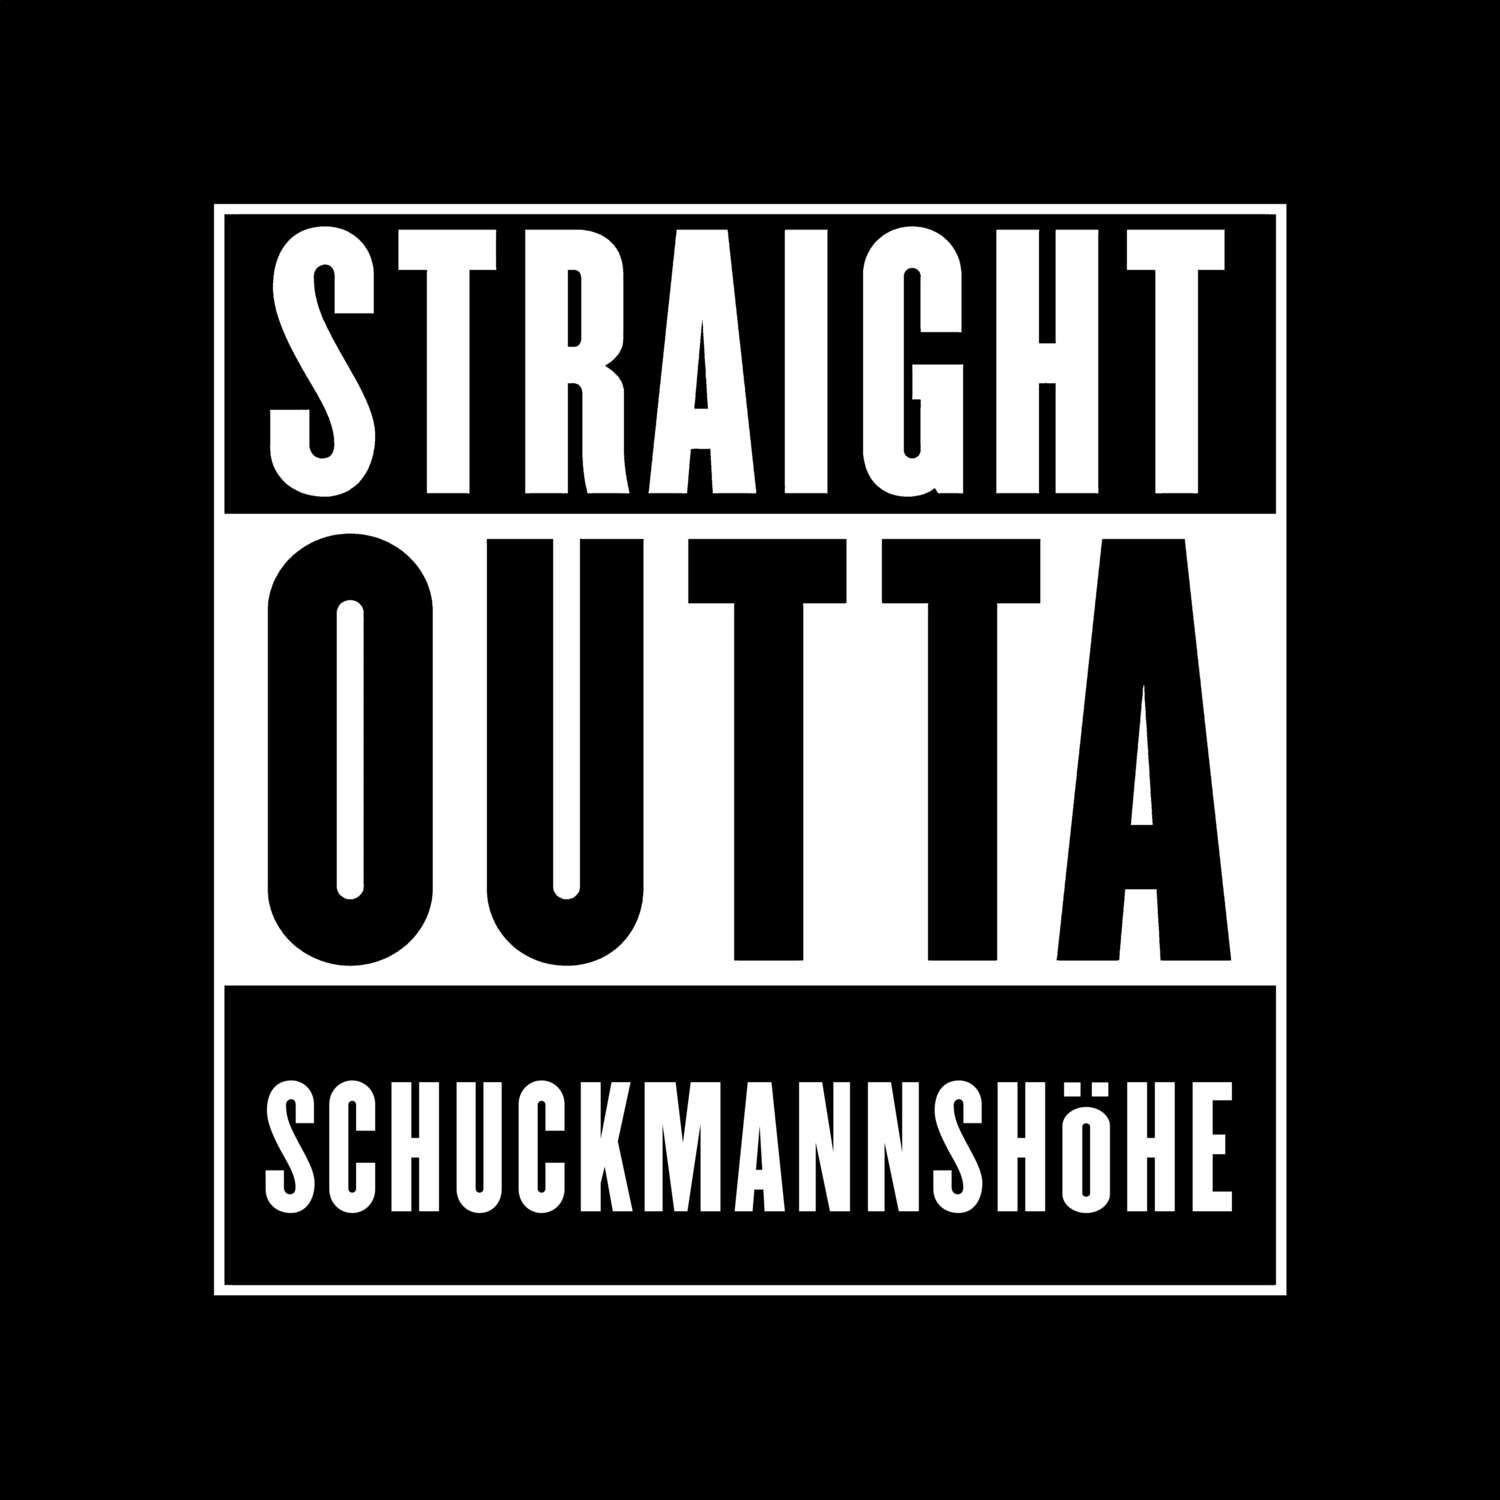 Schuckmannshöhe T-Shirt »Straight Outta«